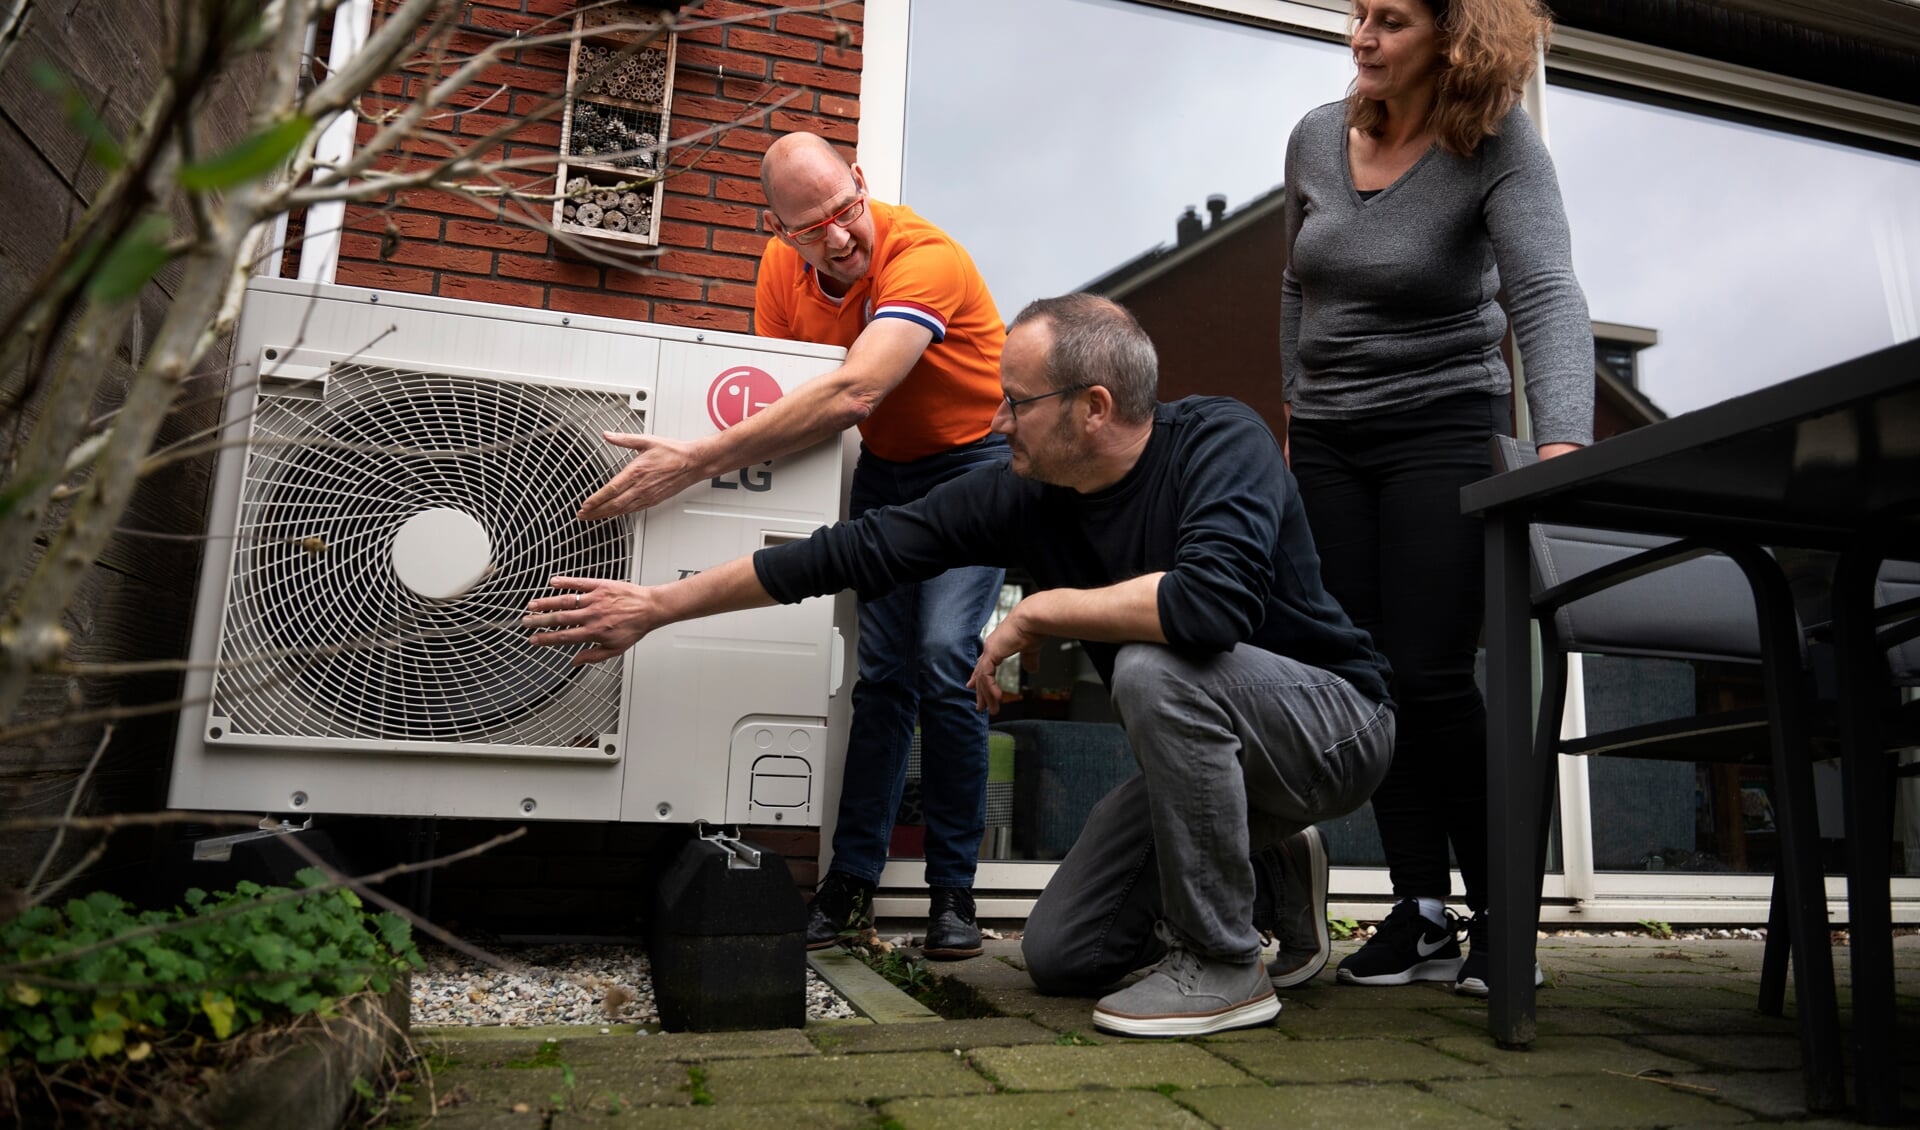 Nederland, Amersfoort, 20211203
Willem Eelman van de KlimaatMissie geeft uitleg over de verschillende manieren waarop duurzaam wonen mogelijk is.
Foto: Kick Smeets / Rijksoverheid 2021